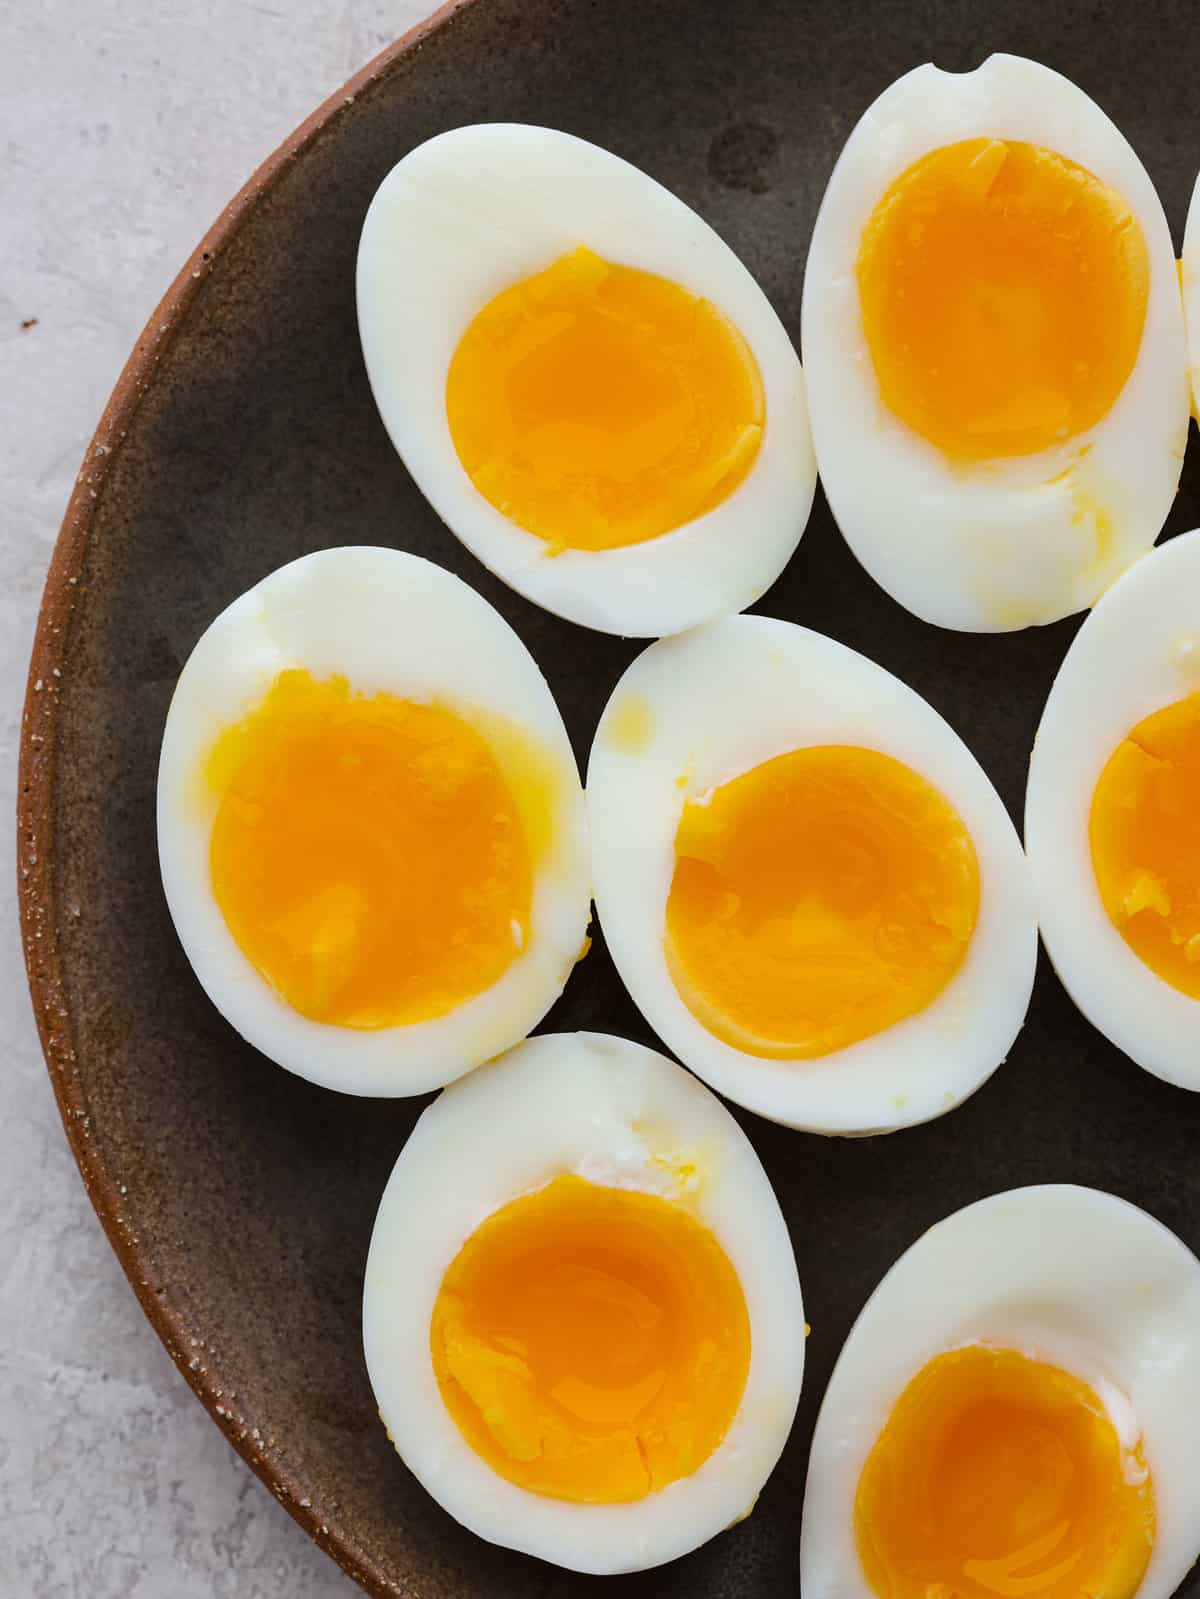 Soft Boiled Eggs | The Recipe Critic